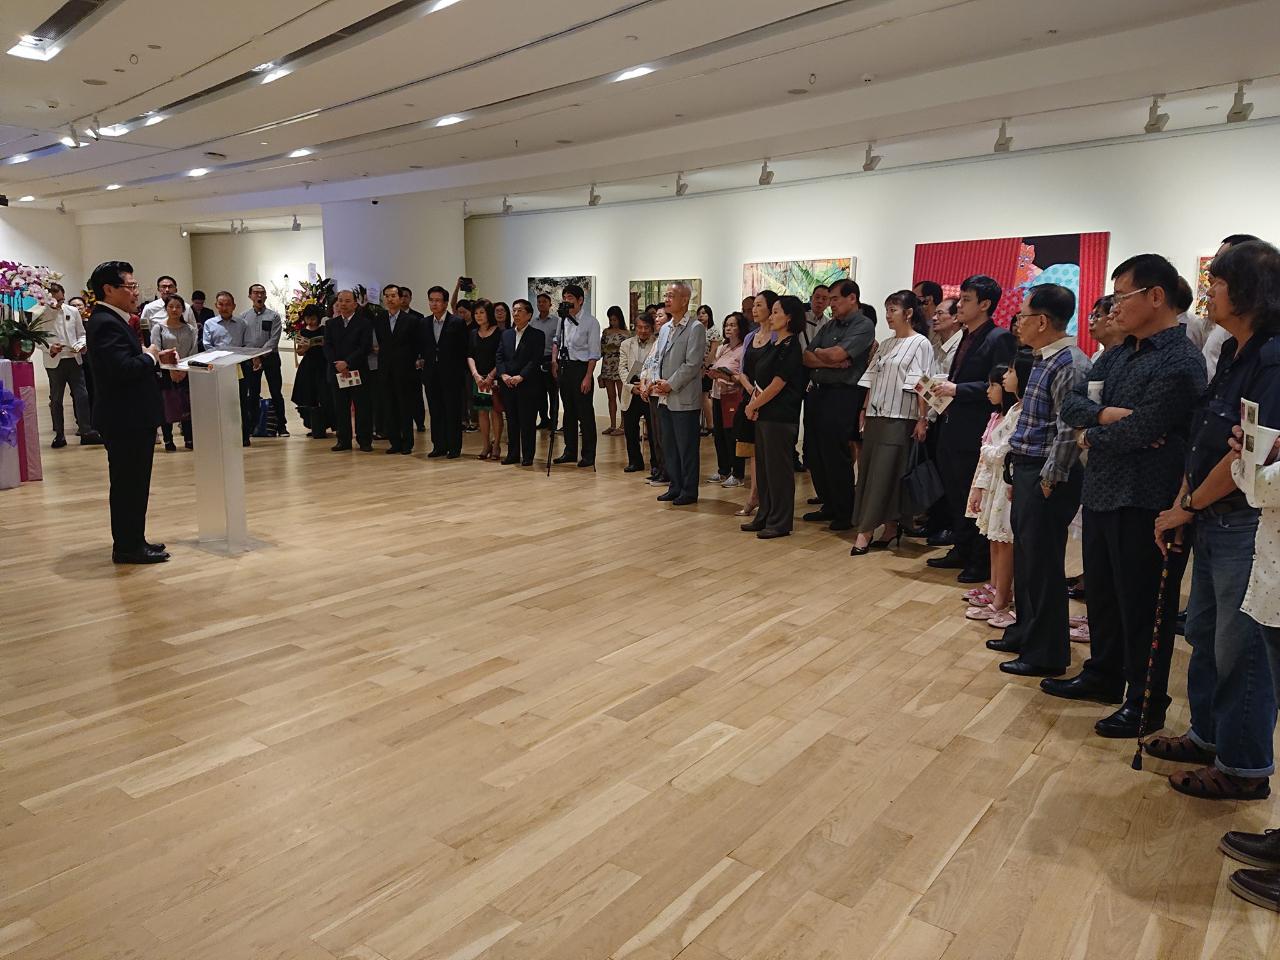 駐新加坡台北代表處於10月19日晚間在ION Art畫廊舉辦「盛放臺灣—臺灣當代藝術展」開幕典禮，由梁國新代表主持，新加坡藝文、學術及媒體等各界人士逾120人出席，高度肯定臺灣藝術家的創意及我國軟實力。